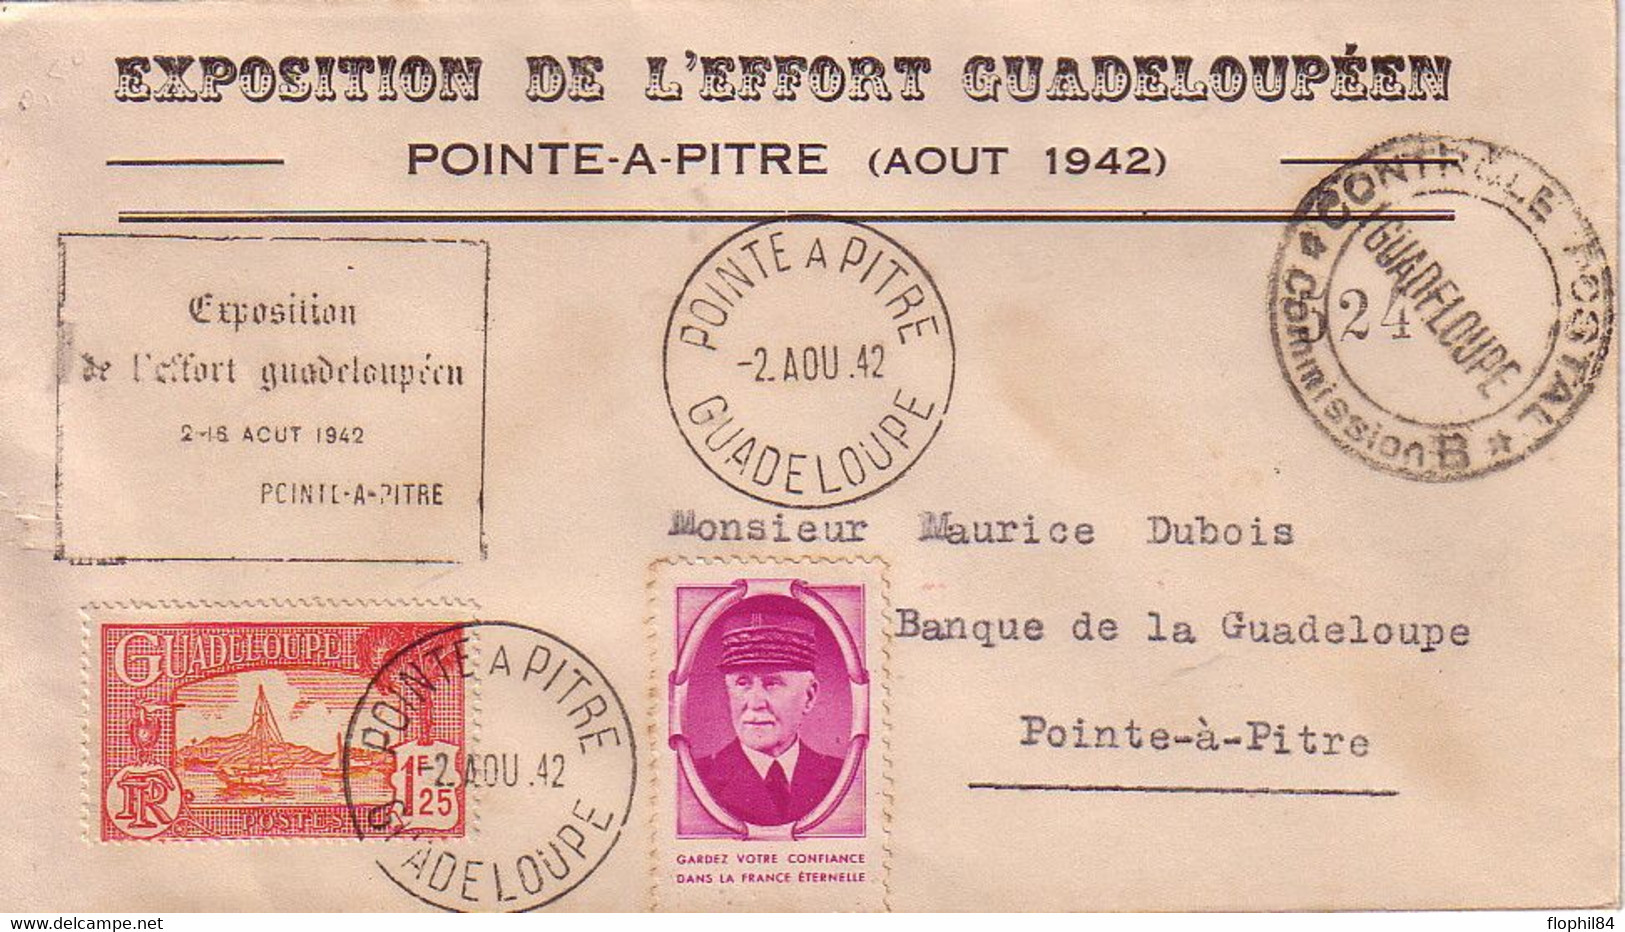 GUADELOUPE - POINTE A PITRE - AOUT 1942 - GUERRE 39-45 - EXPOSITION DE L'EFFORT GUADELOUPEEN - CENSURE COMMISSION B - Lettres & Documents